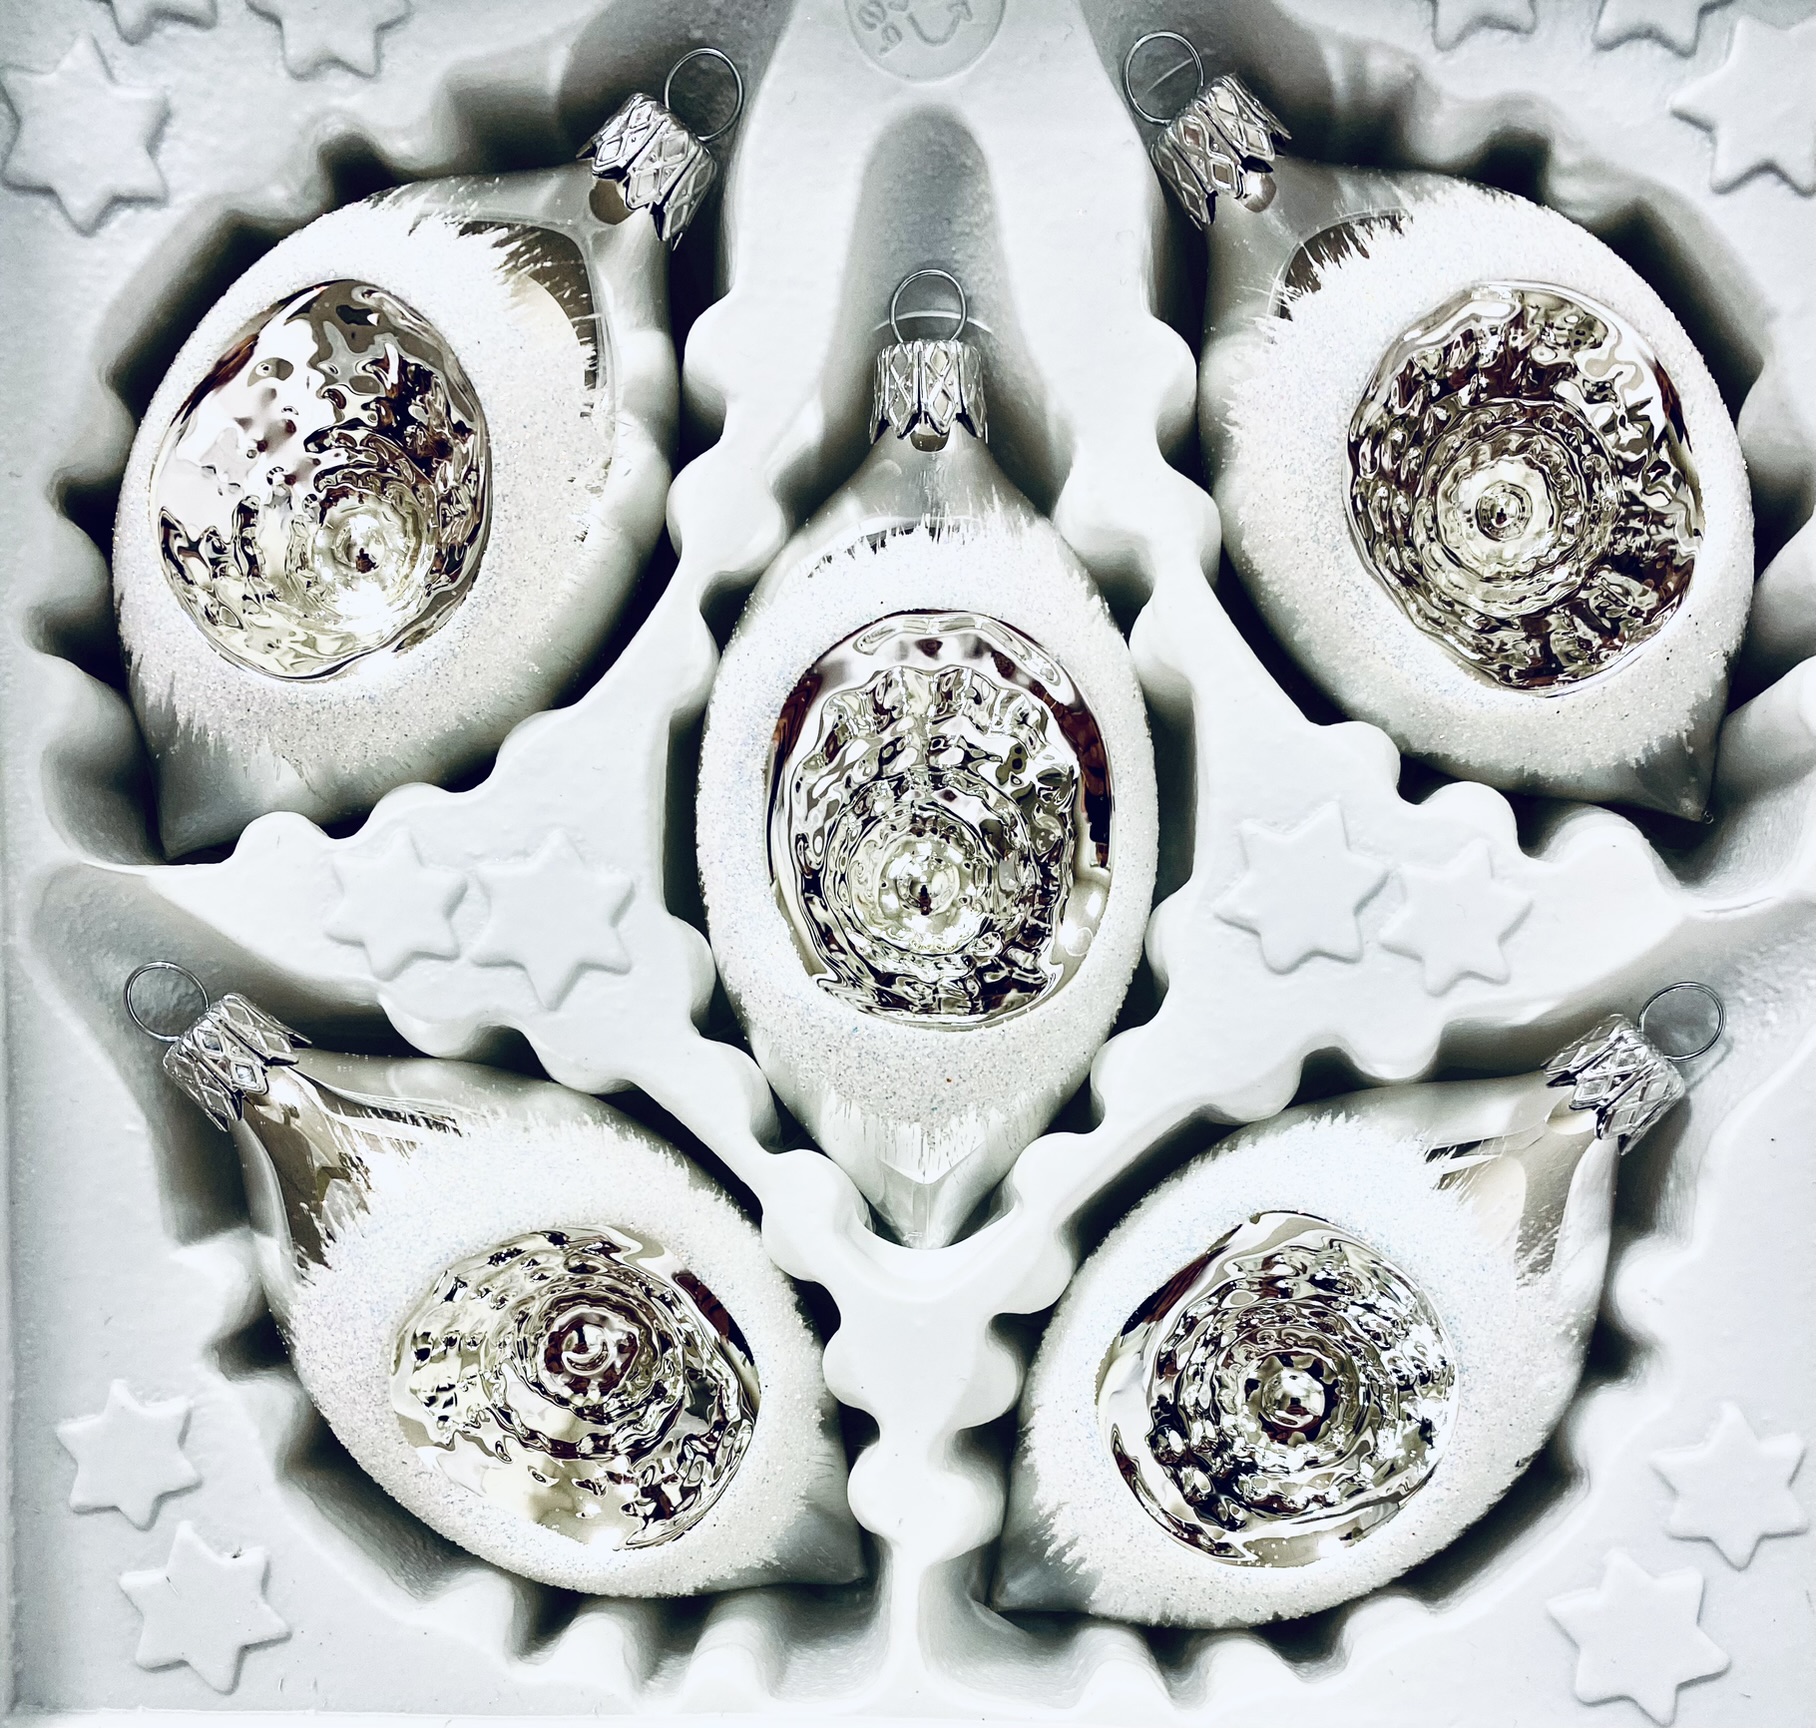 Stříbrná elegance- Sada 5 oválných stříbrných koulí s bílým dekorem, velikost 8 cm, s reflektorem Balení: 1 balení, Barva: bílá, Velikost: 8 cm